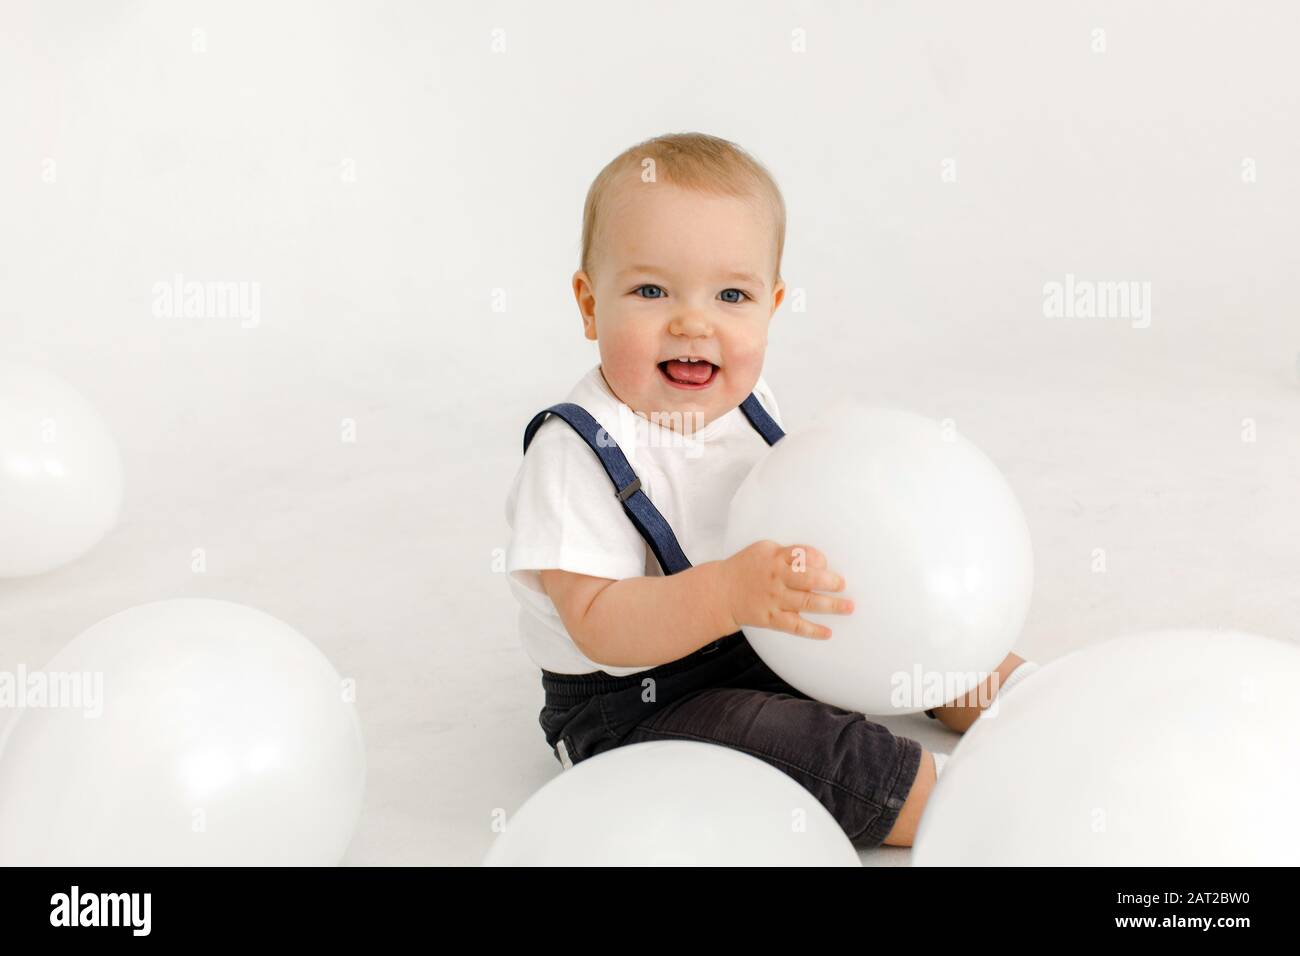 Joyful little kid with balloons in studio Stock Photo